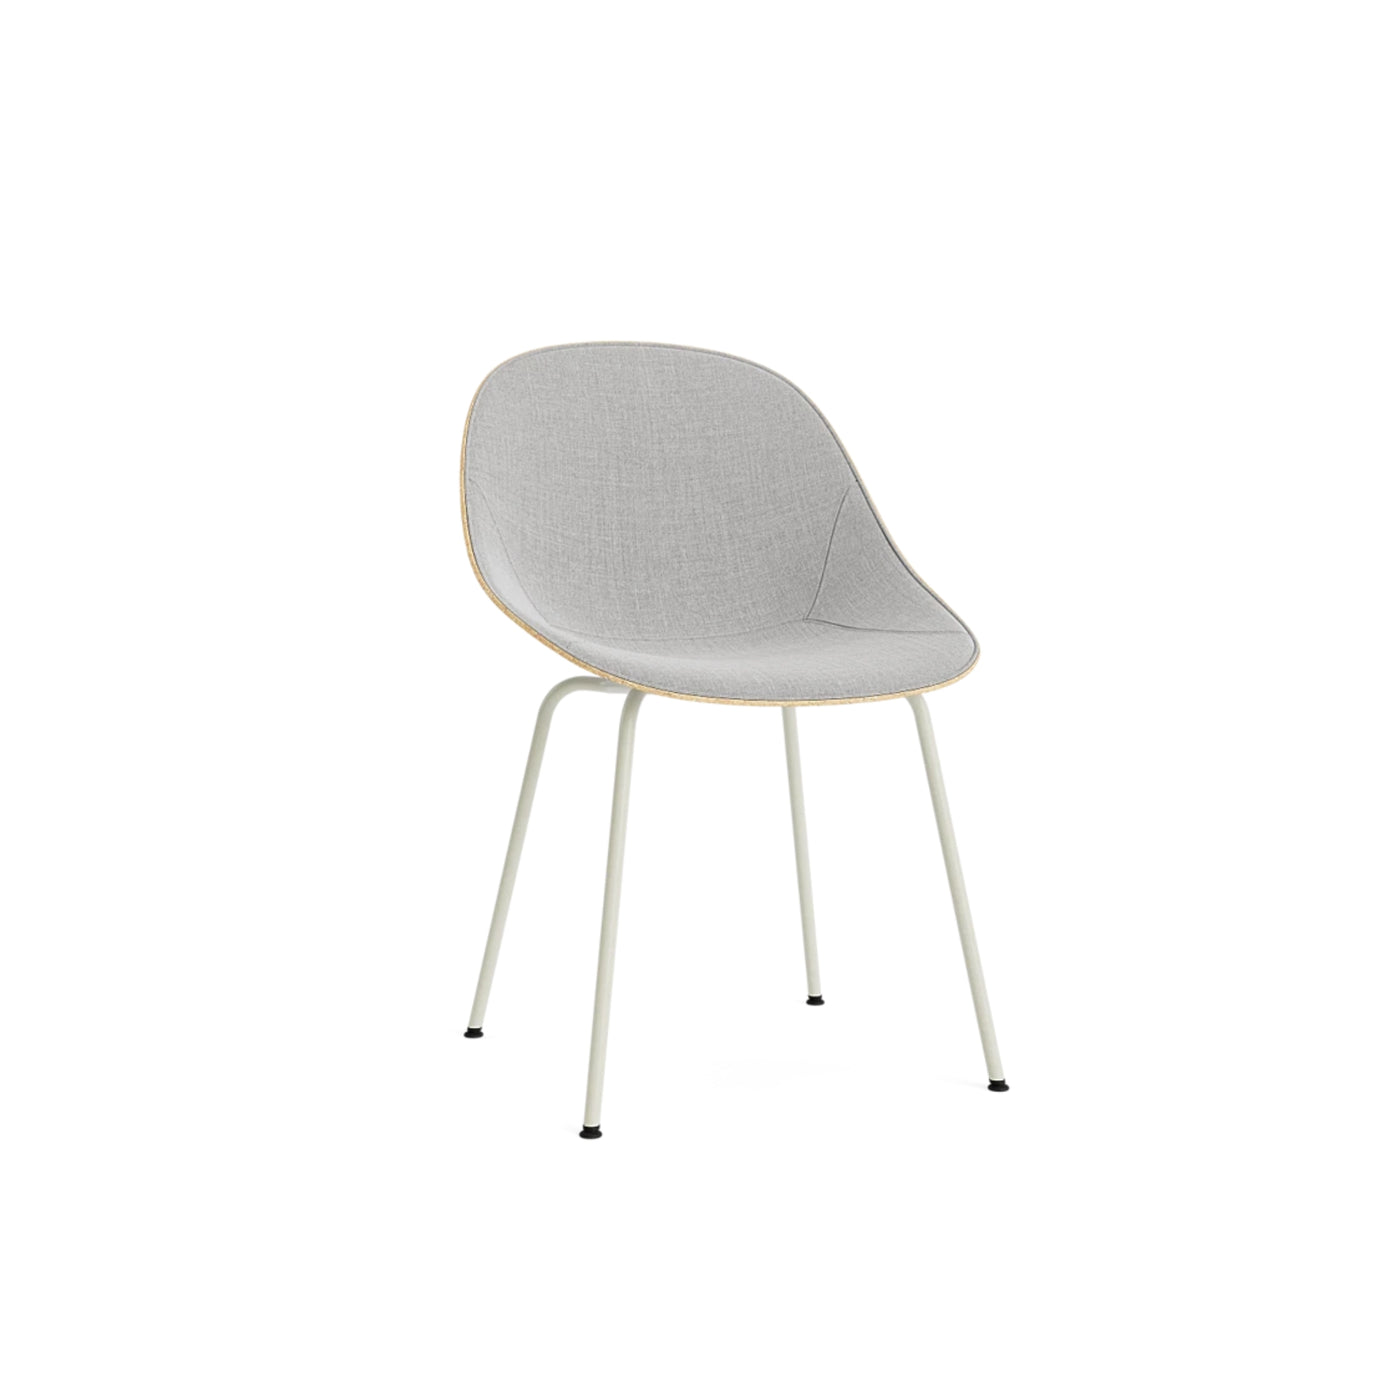 Normann Copenhagen Mat Chair at someday designs. #colour_remix-123